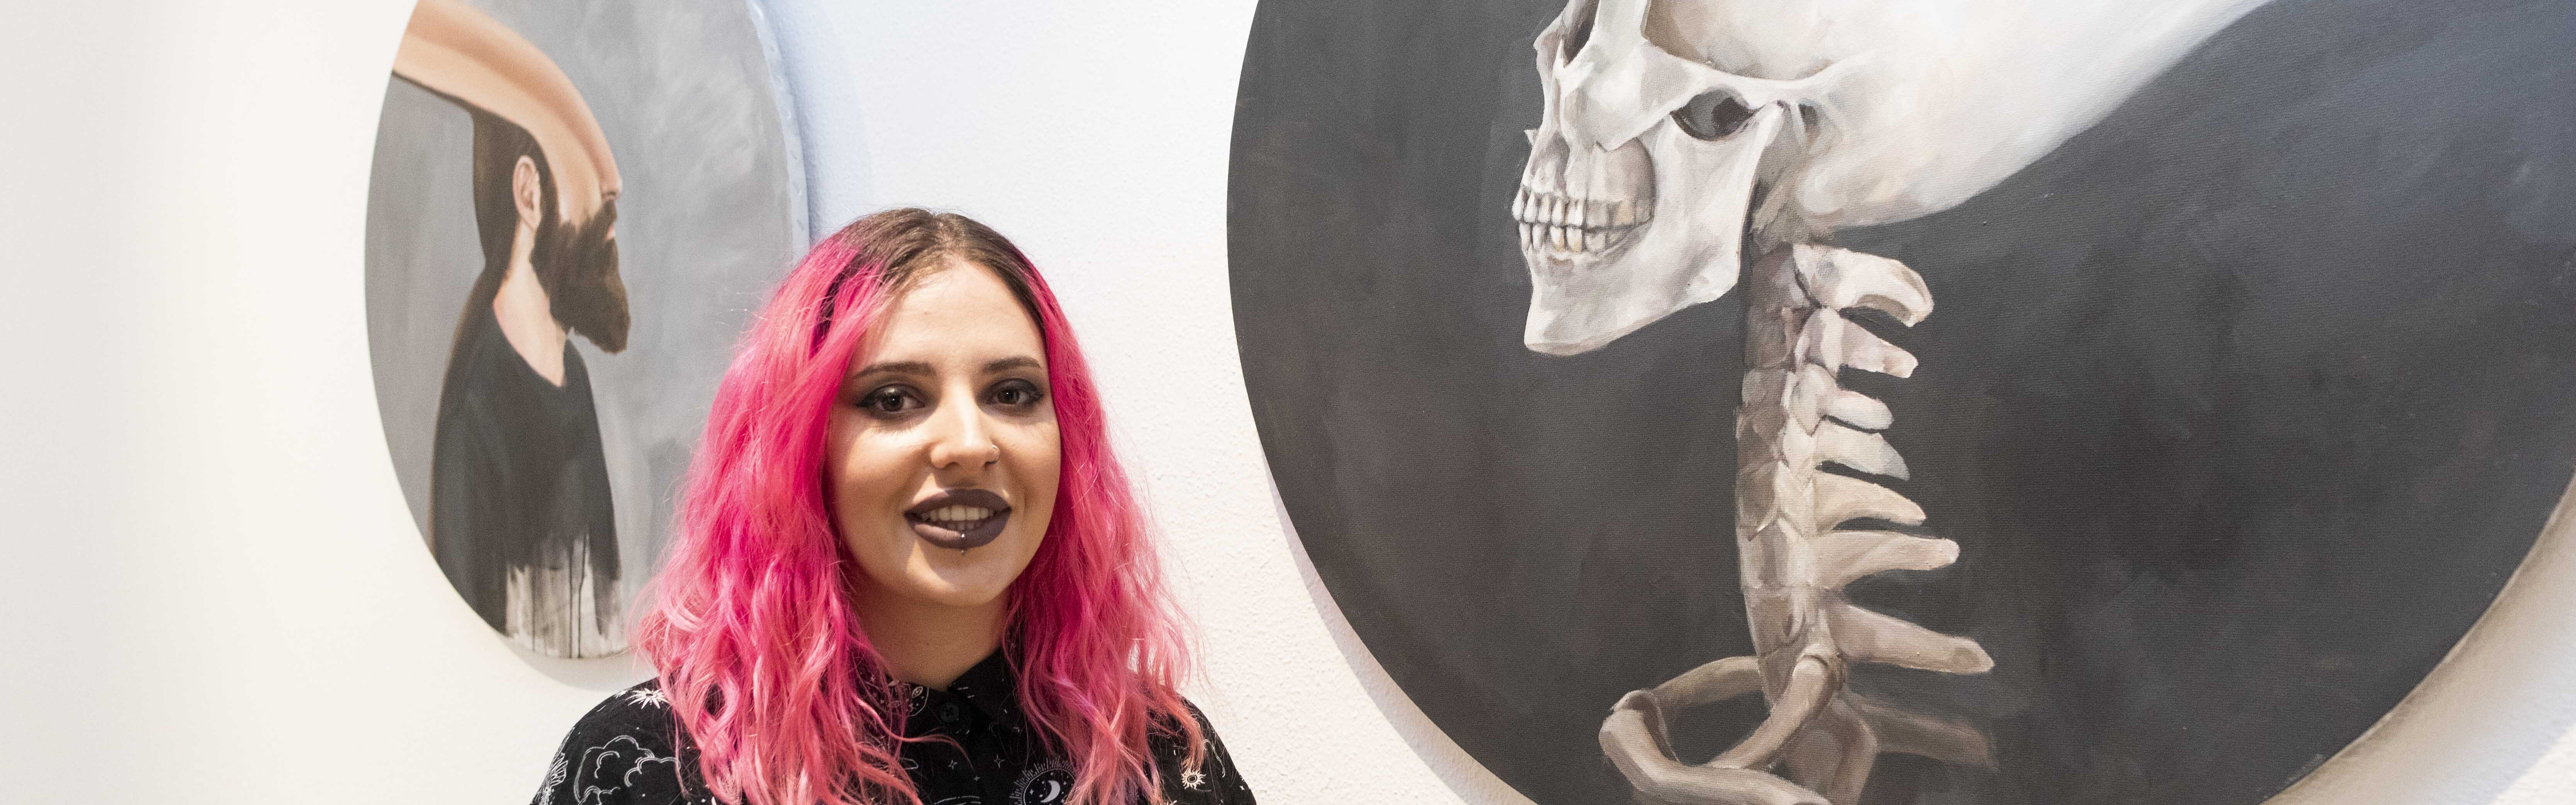 El museo de la UMU acoge una exposición de Natalia Sandoval sobre el concepto de vanidad